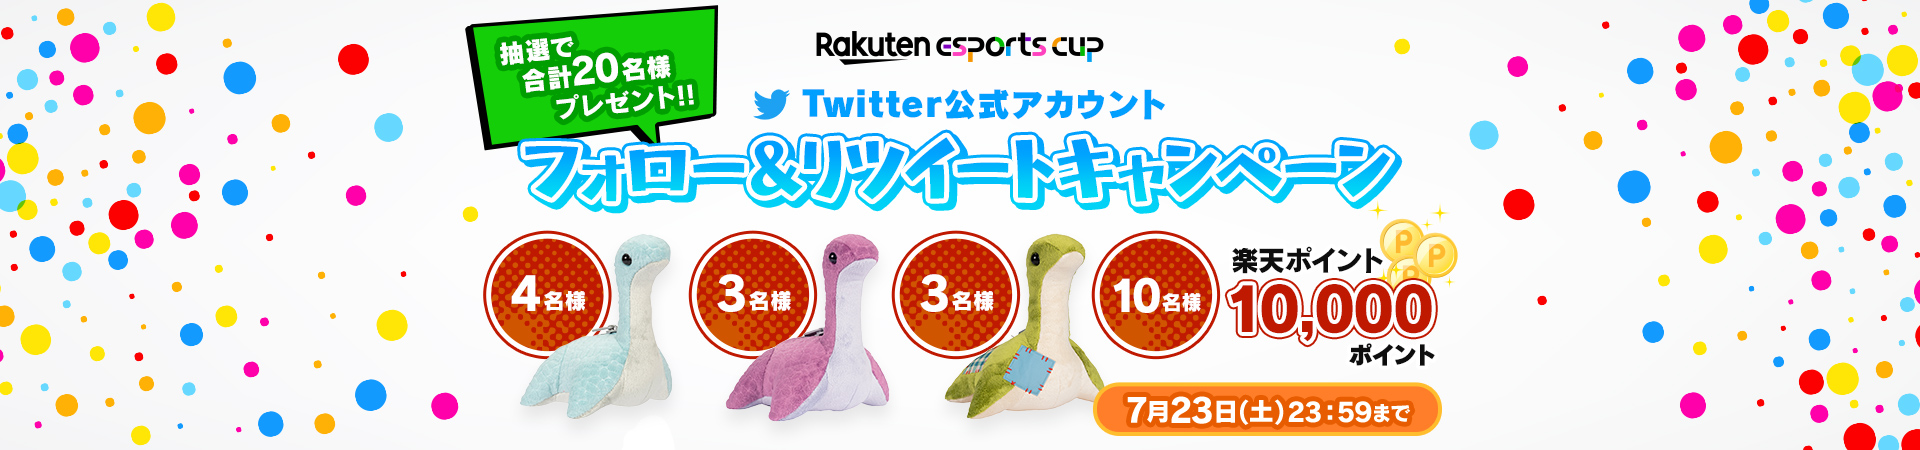 Rakuten esports cup 抽選で合計20名様プレゼント!! twitter公式アカウント フォロー＆リツイートキャンペーン